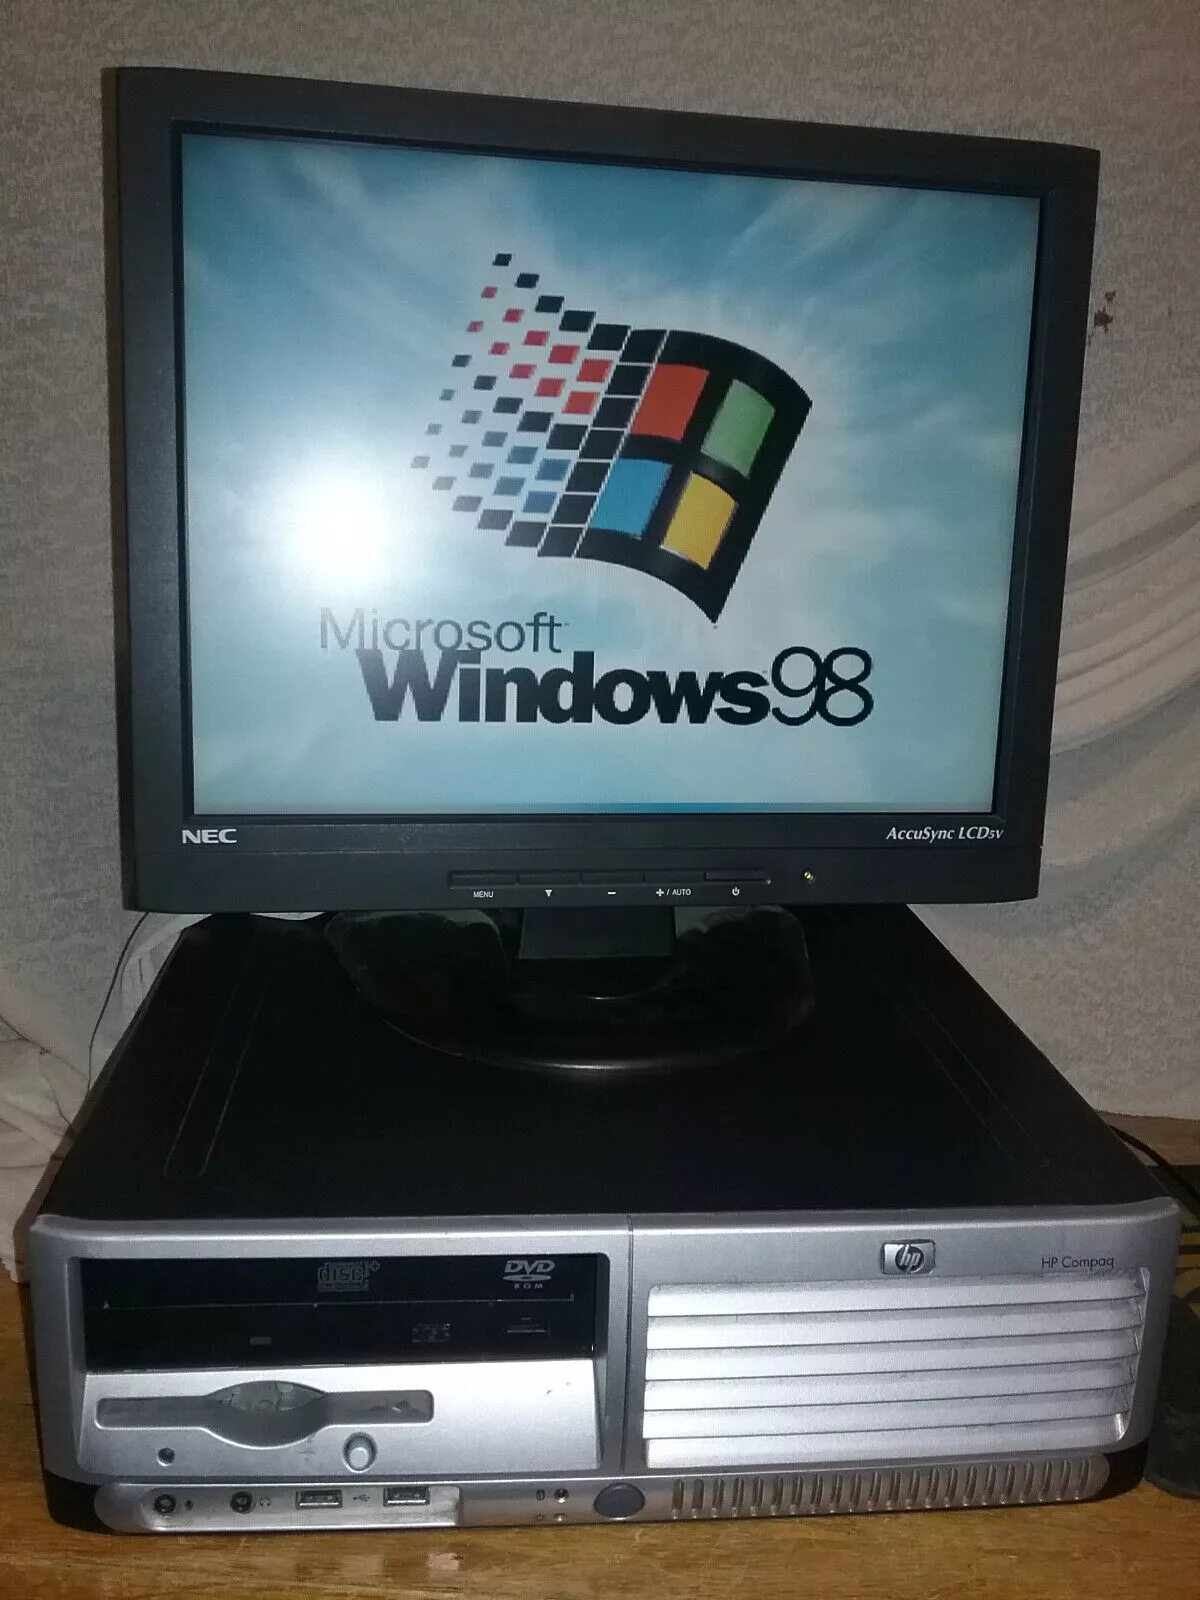 Компьютеры 98 года. Пентиум 4 монитор. Моноблок Windows 98. Windows 98 на Pentium 4. Компьютер Pentium 4 Proview.